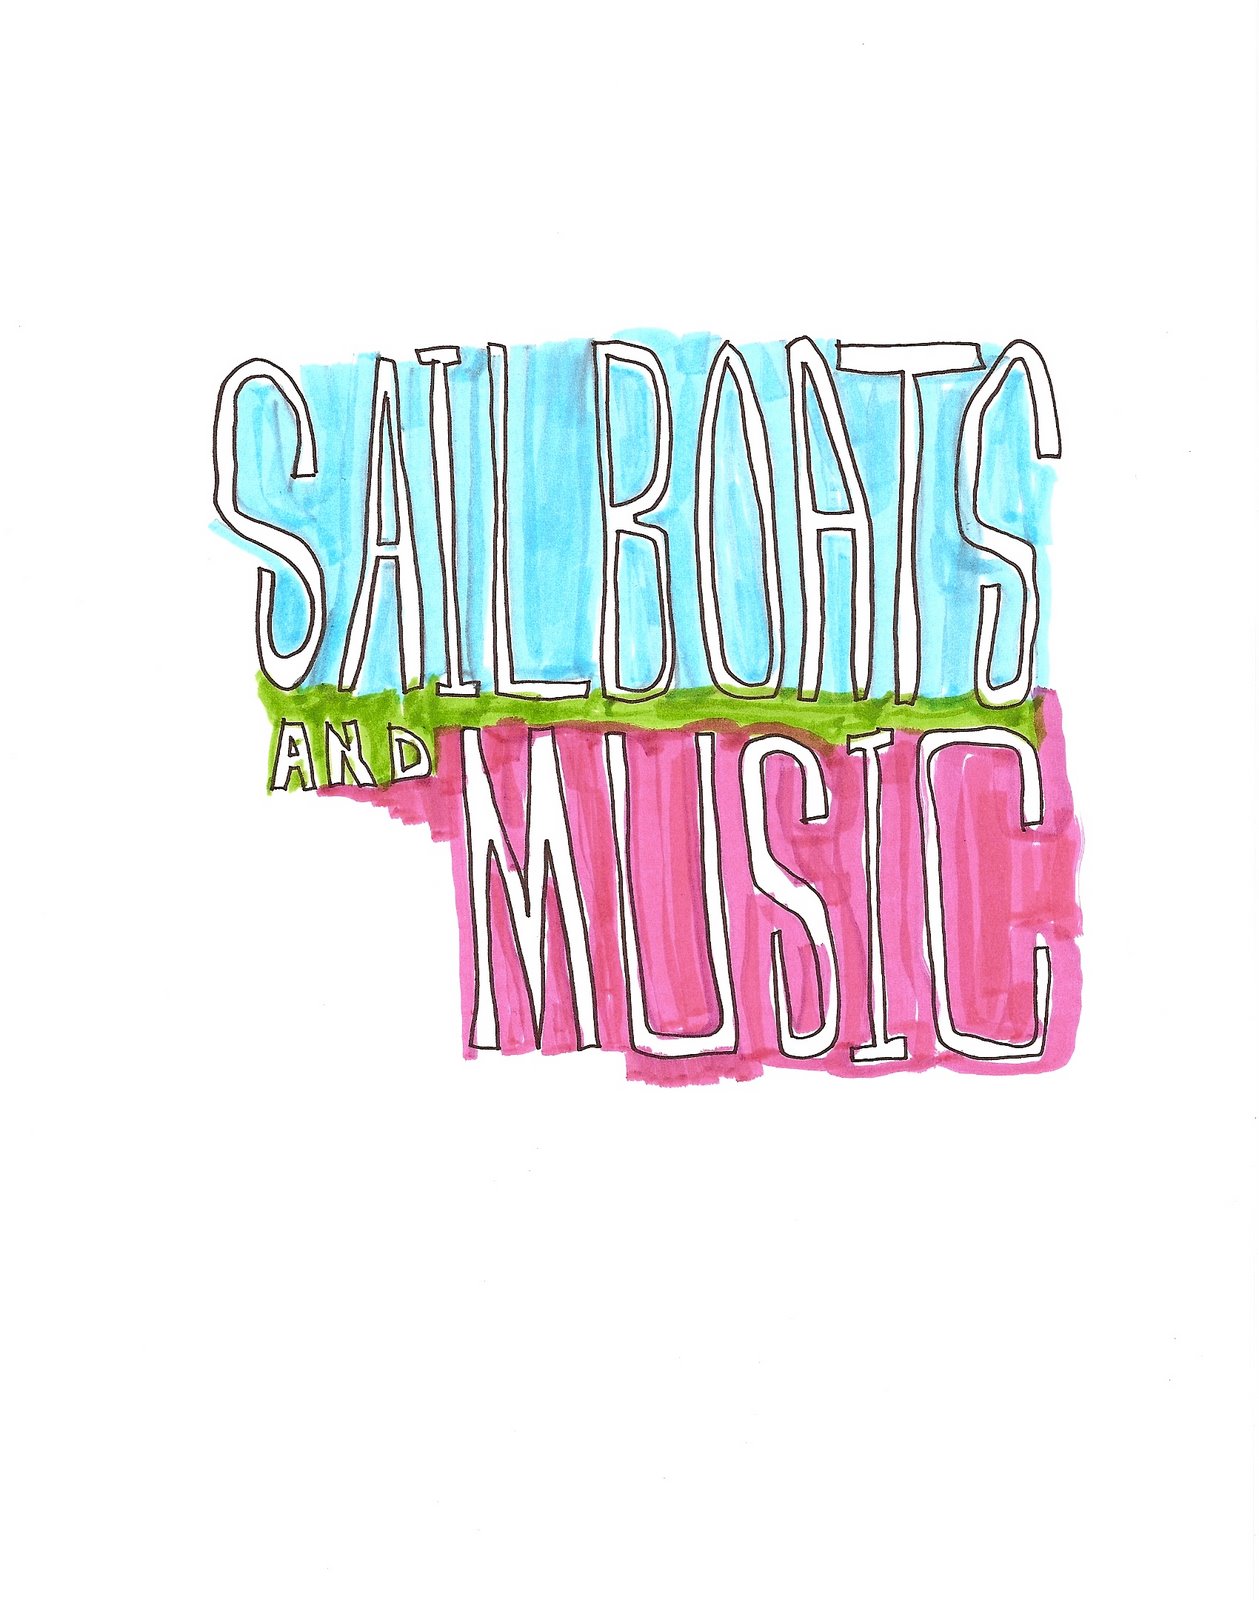 [sailboatsmusic.jpg]